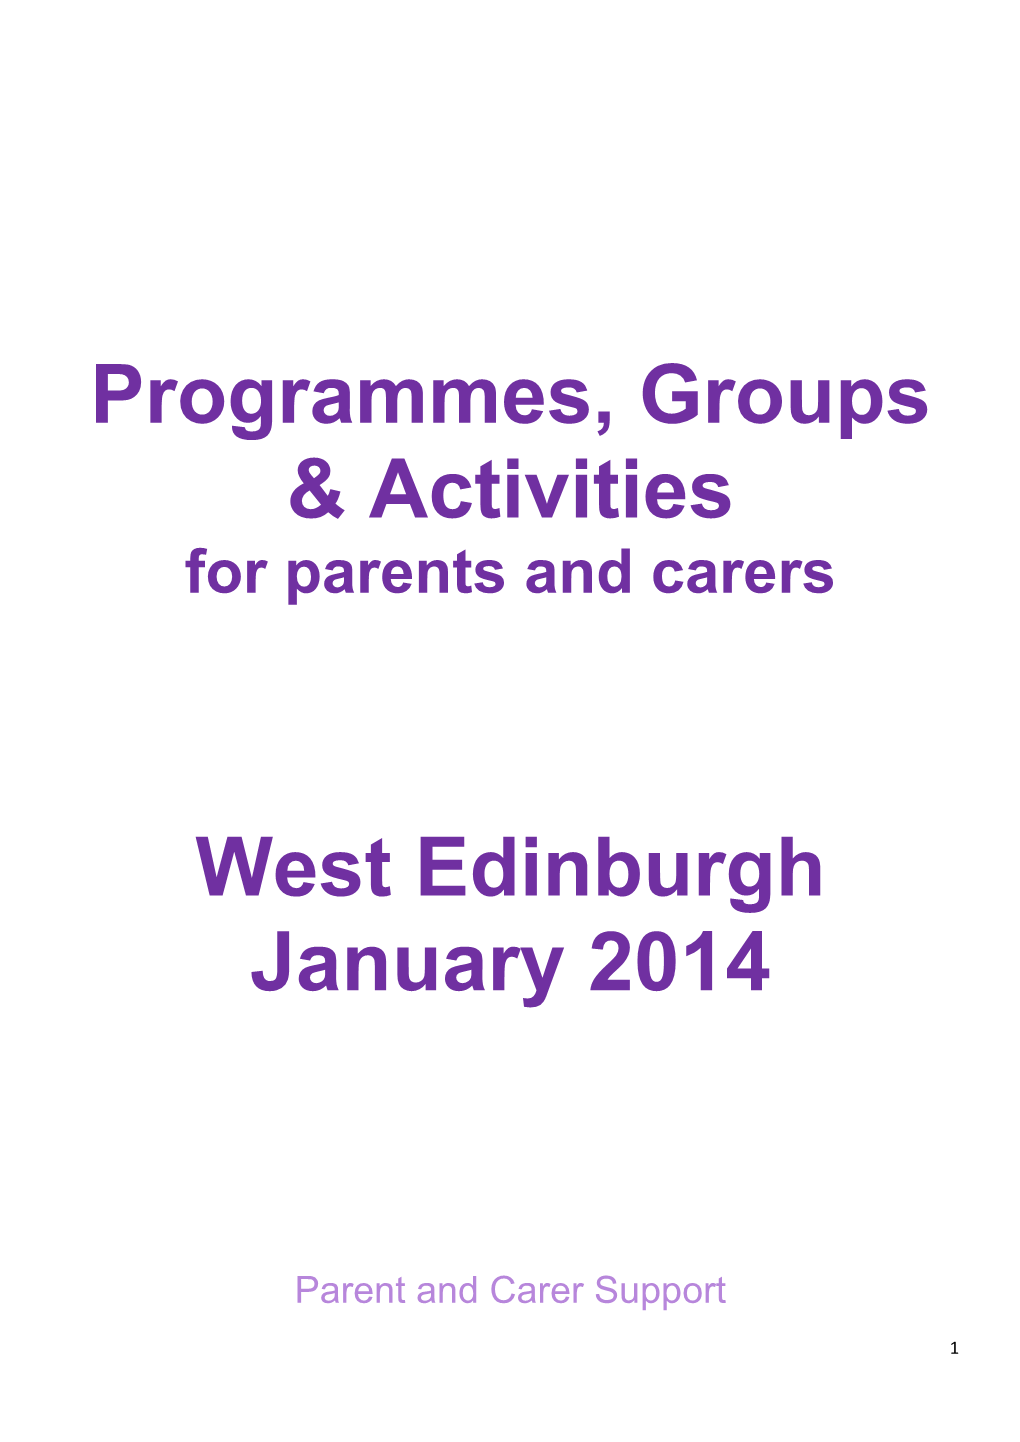 Programmes, Groups & Activities